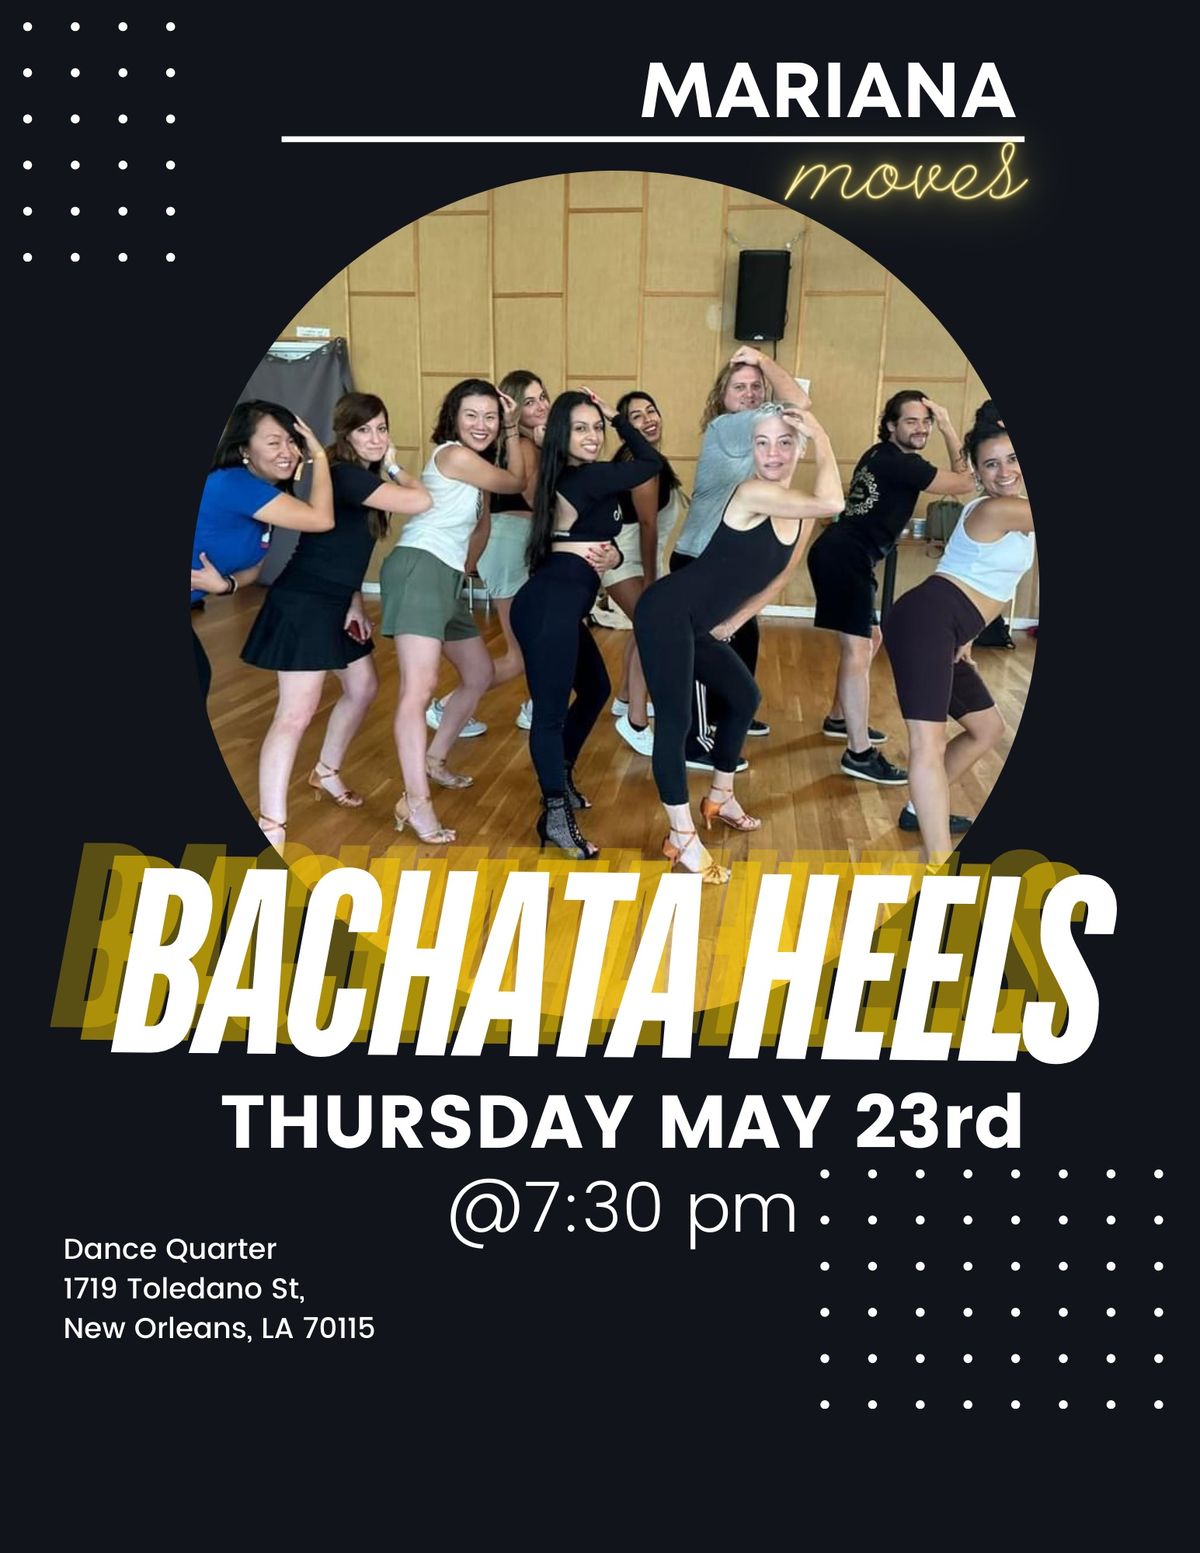 Bachata Heels